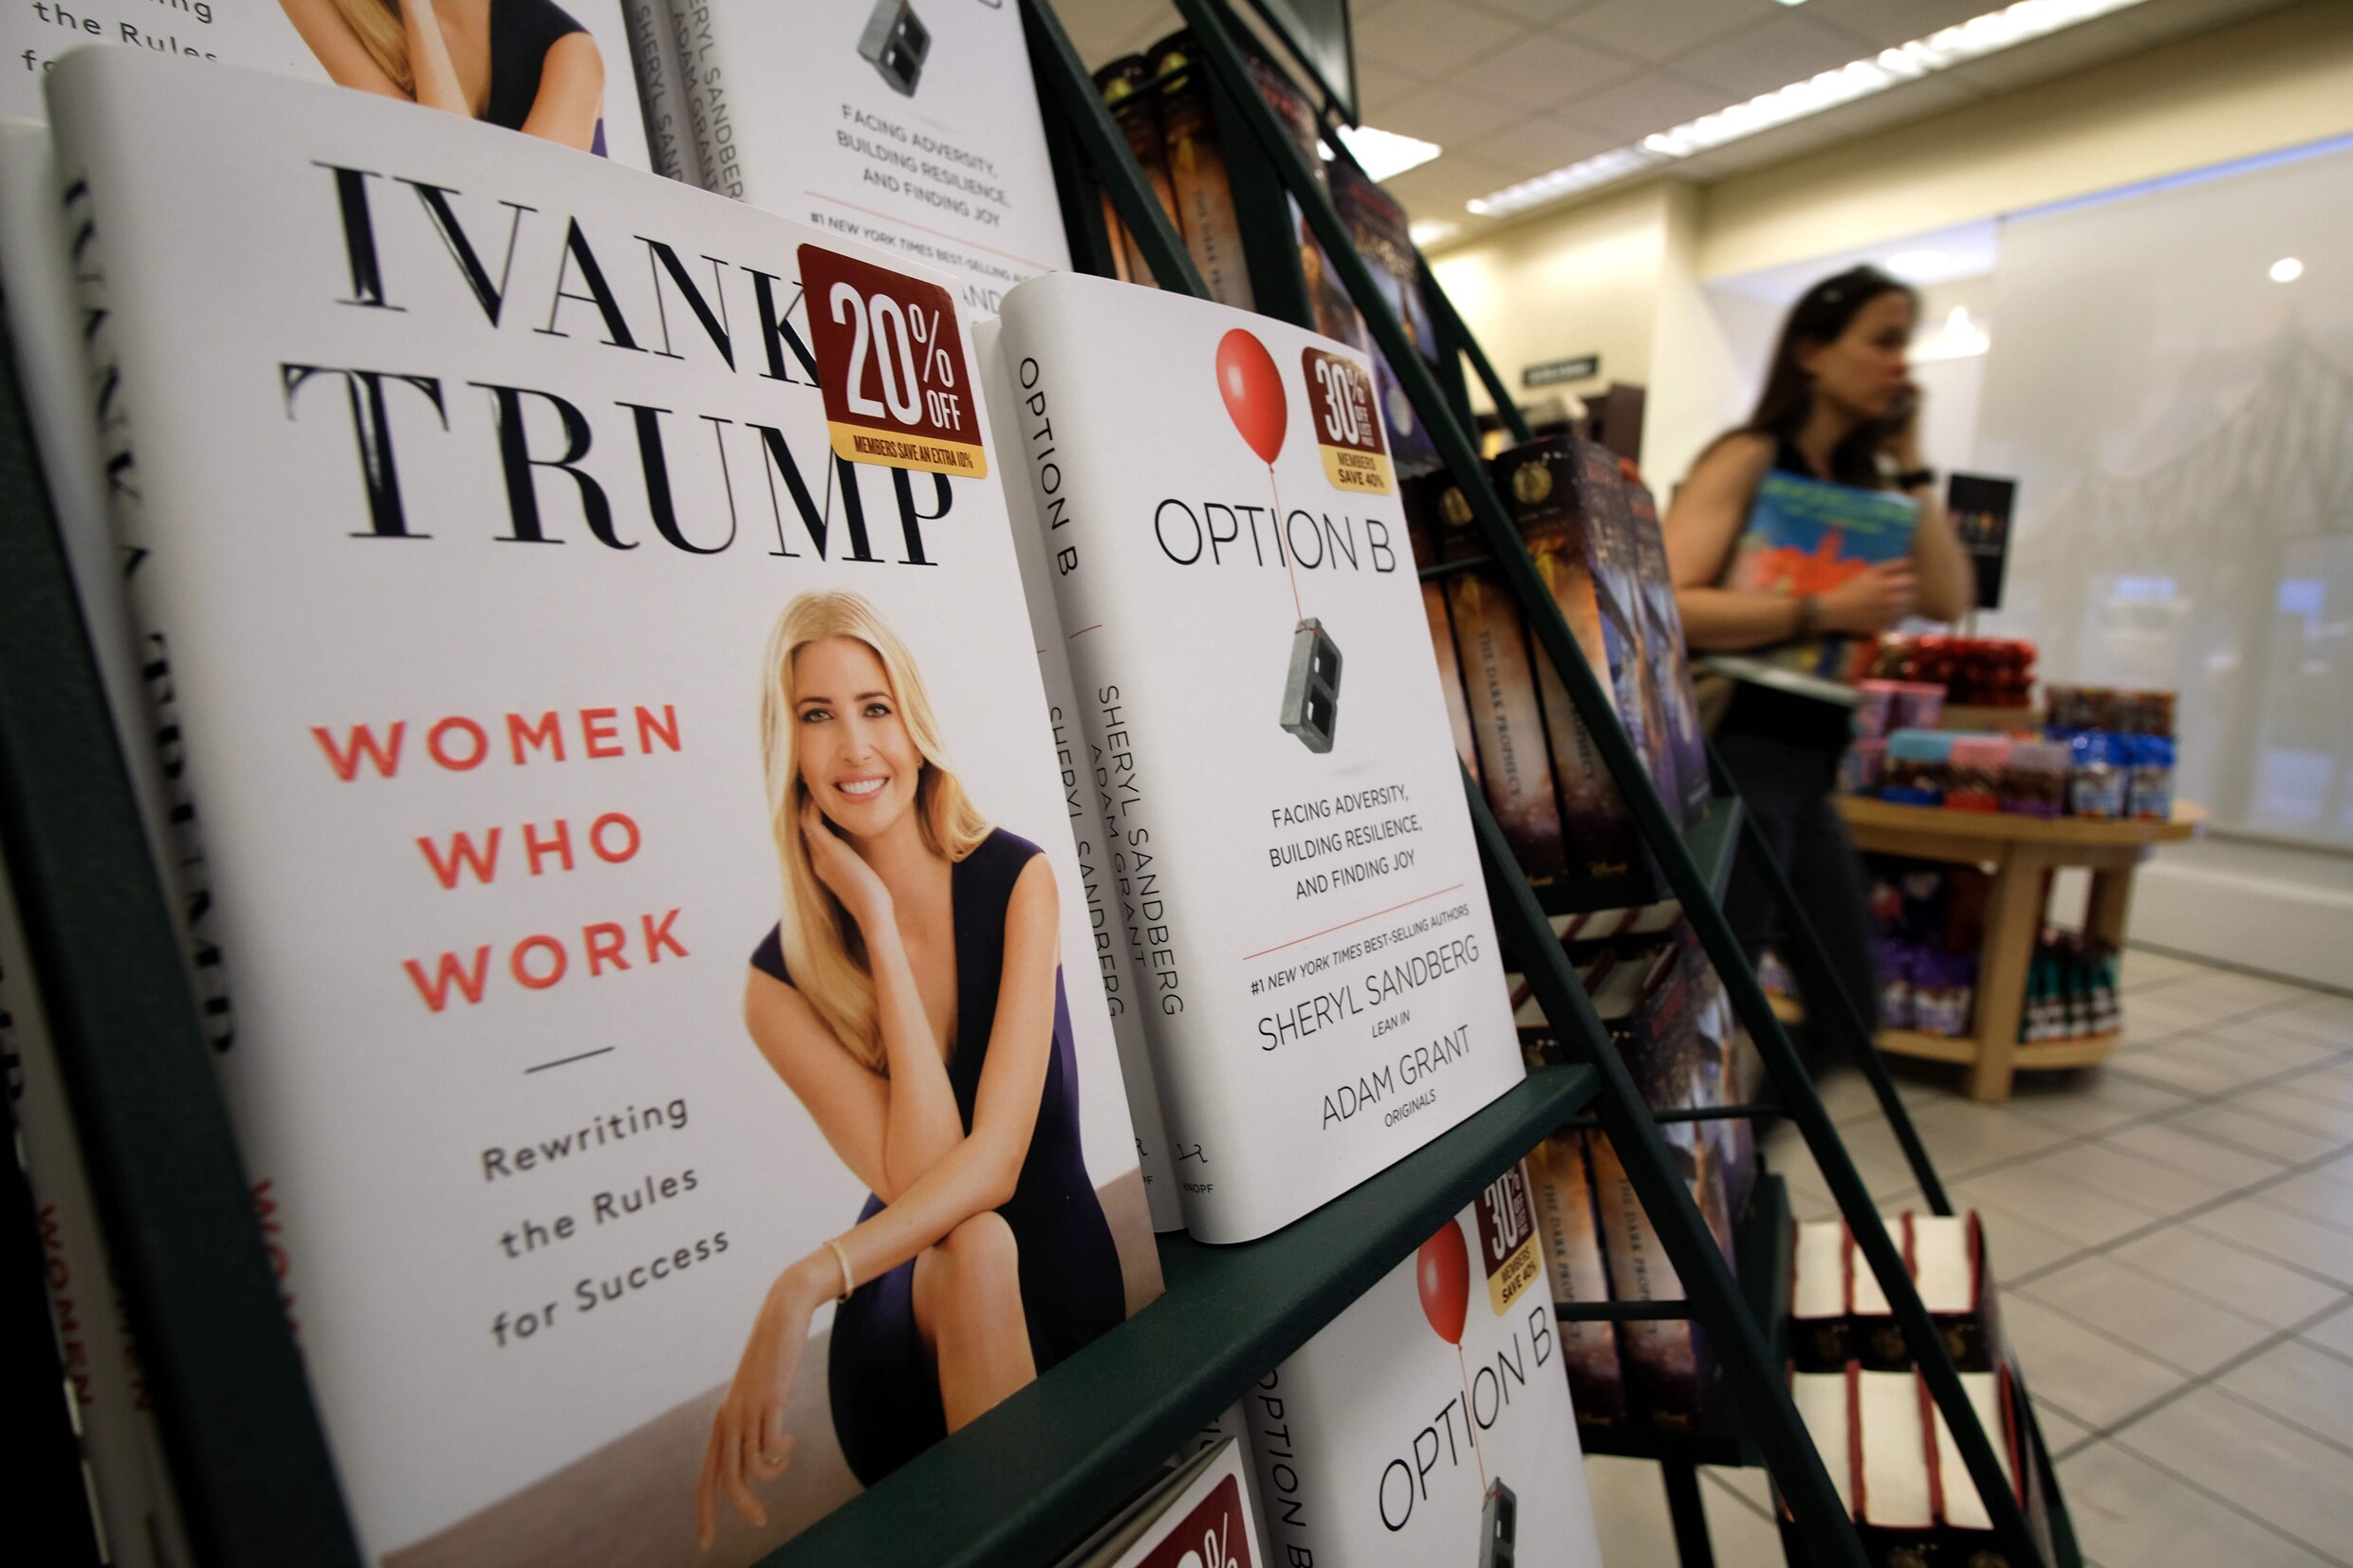 Pijnlijke recensies voor boek van Ivanka Trump: "217 pagina's lang en één millimeter diep"